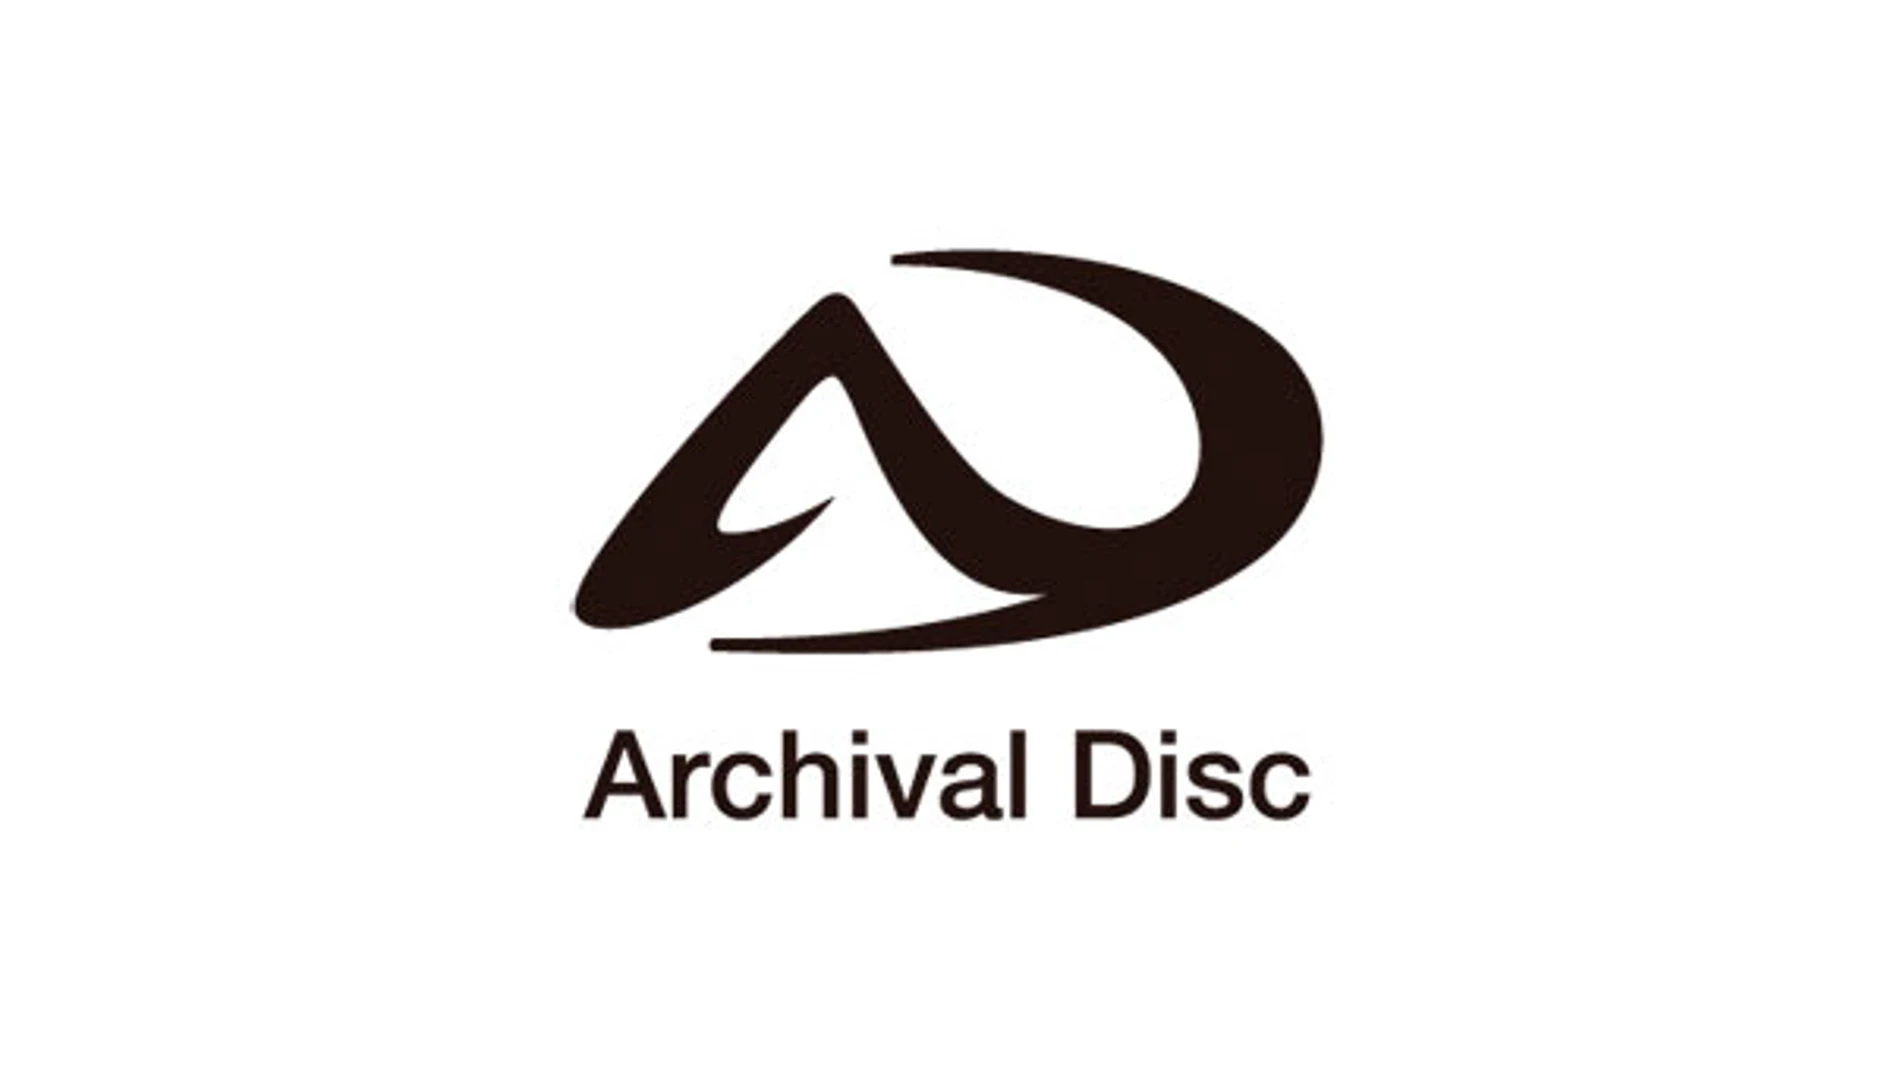 Sony y Panasonic anuncian Archival Disc, el sucesor del Bluray